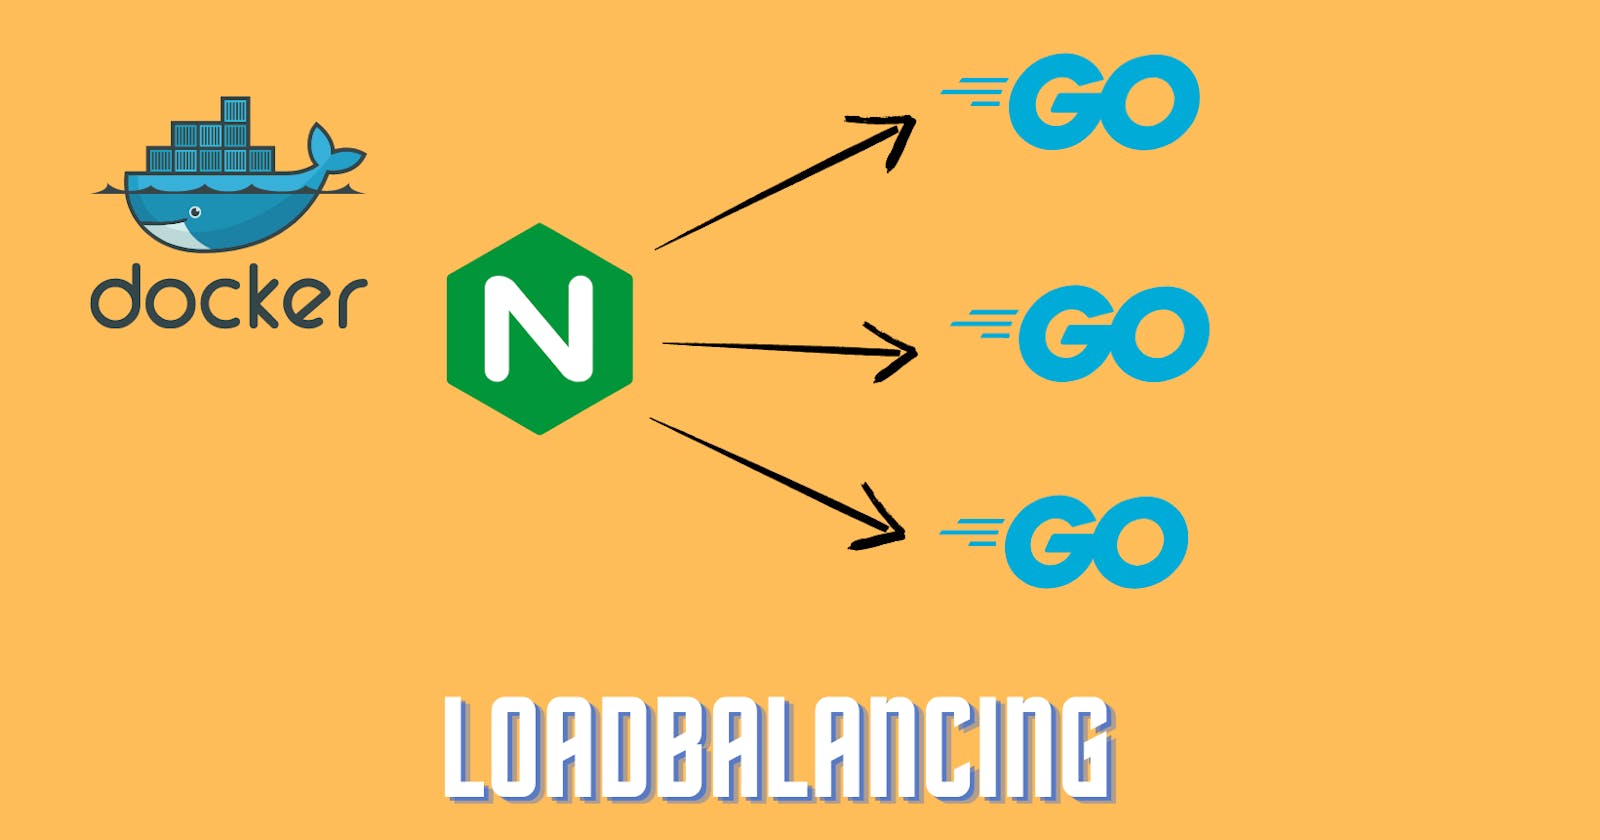 Loadbalancing with NGINX, Docker, and GoLang